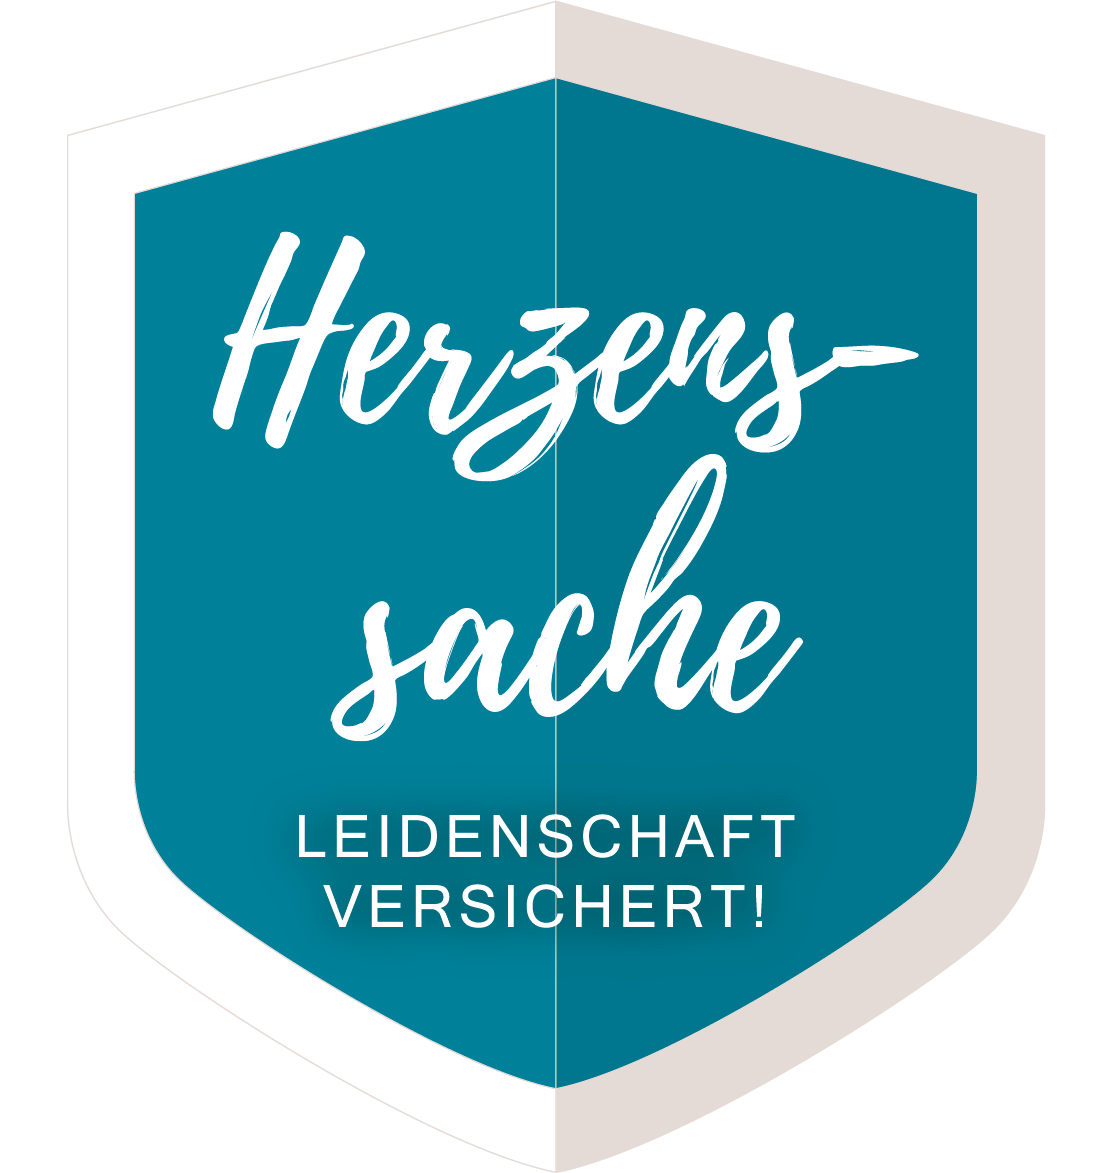 logo-herzenssache.png